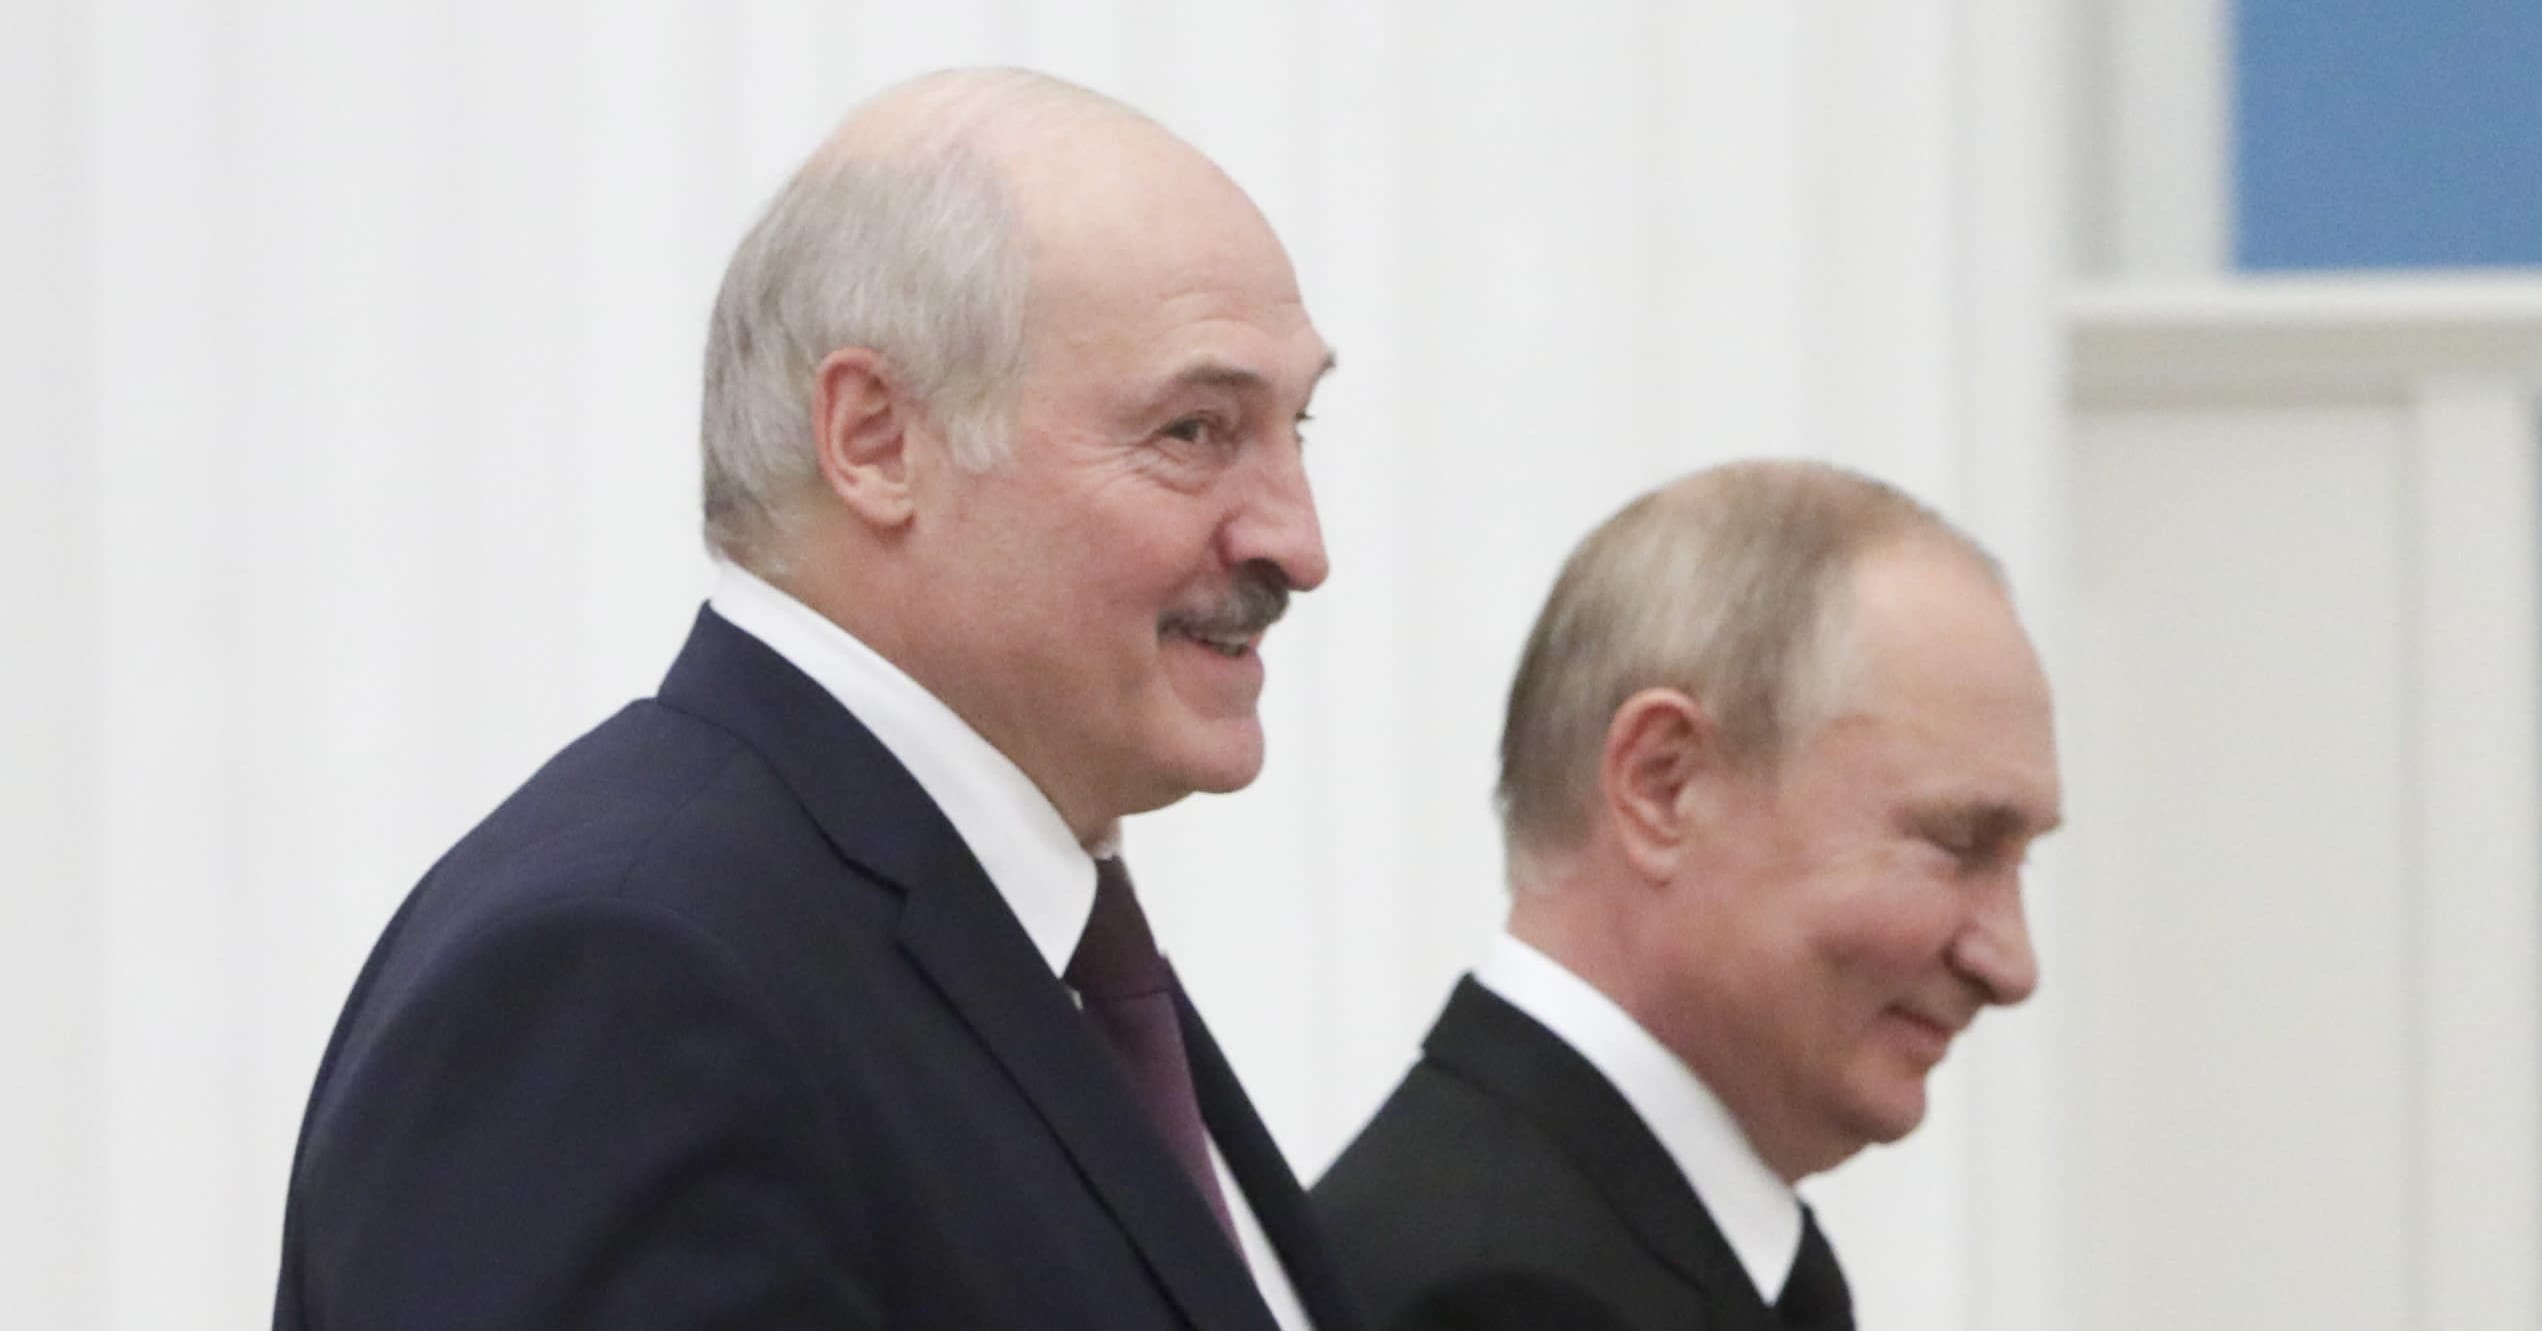 Analyysi: Käyttääkö Valko-Venäjä siirtolaisasetta Venäjän luvalla vai jopa Venäjän käskystä? Asetta voidaan käyttää myös Suomea vastaan